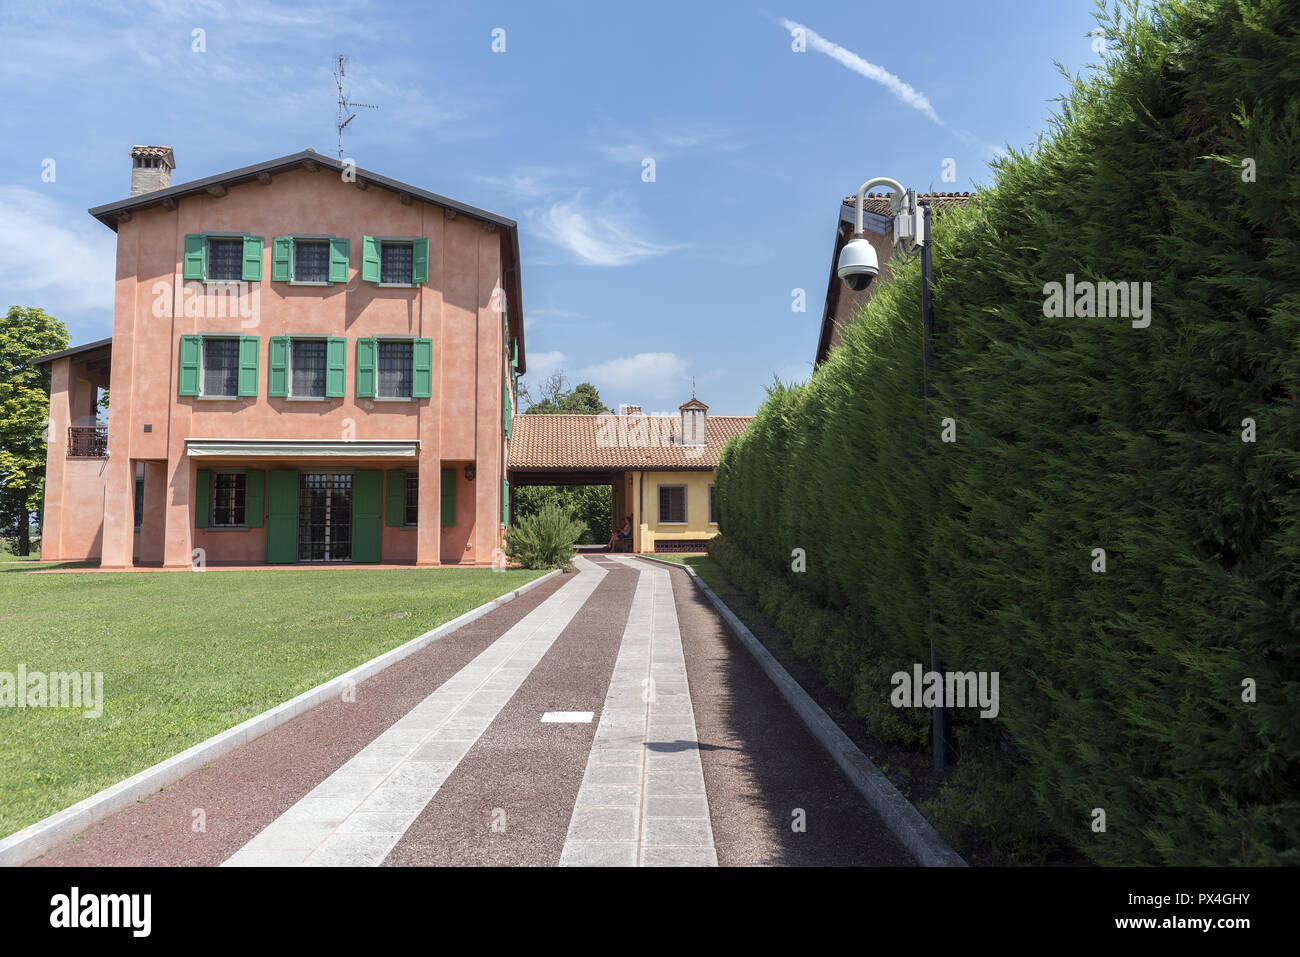 The family home of Luciano Pavarotti. Modena. Rodzinny dom Luciano Pavarotti. Stock Photo